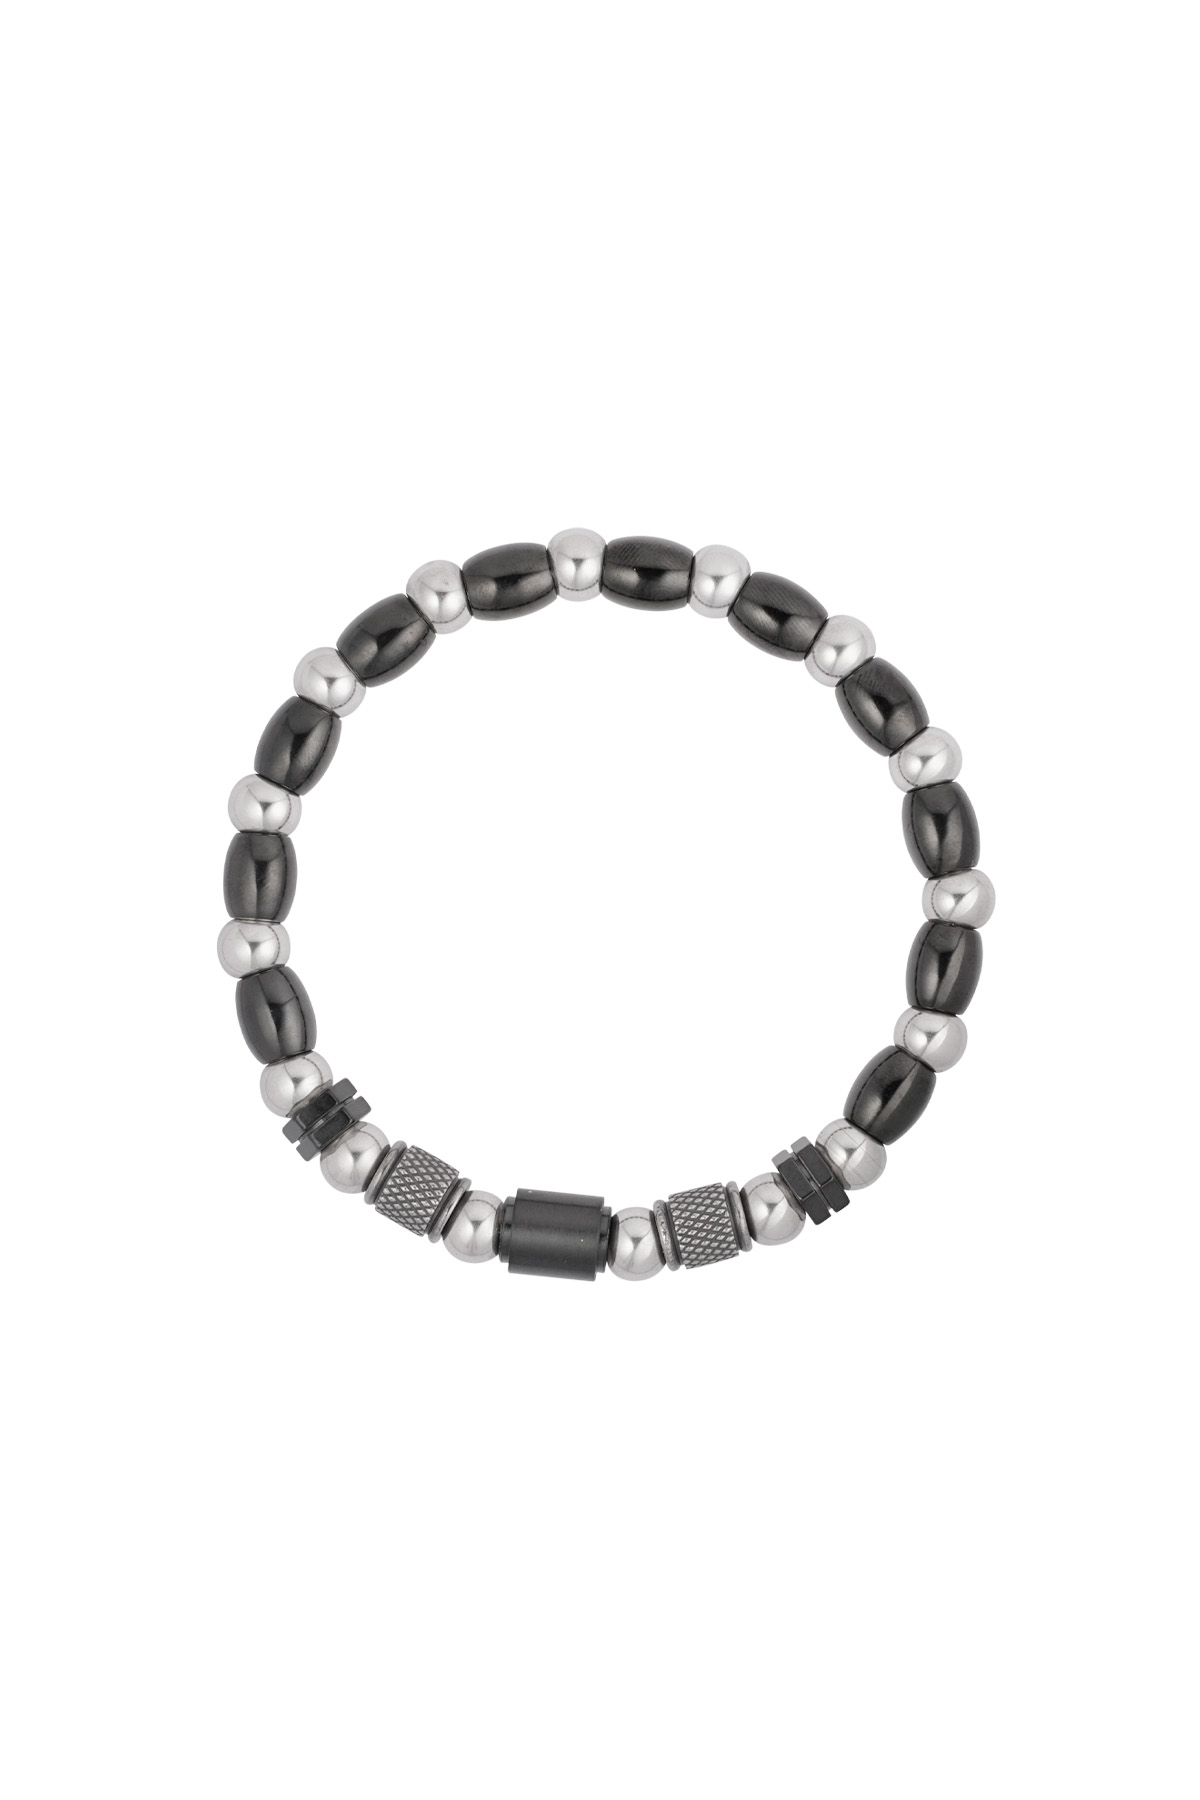 Heren armband zenith - zwart zilver Afbeelding2